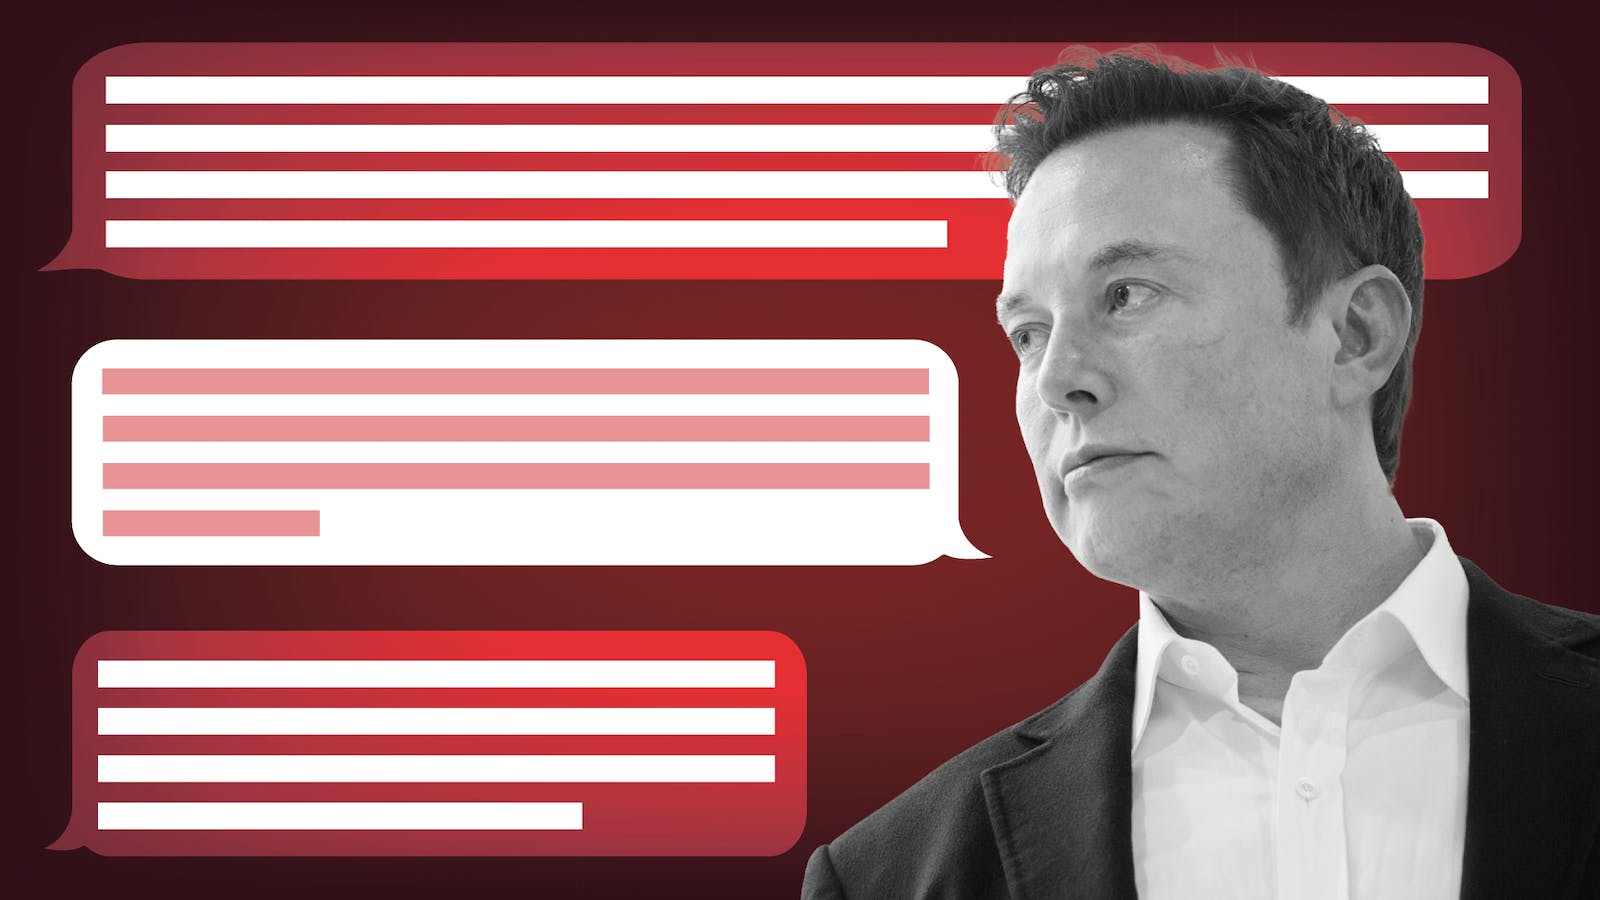 Giám đốc điều hành Tesla, Elon Musk, đang làm việc để thành lập một công ty trí tuệ nhân tạo để cạnh tranh với OpenAI, tờ Financial Times đưa tin. Ảnh: @AFP.